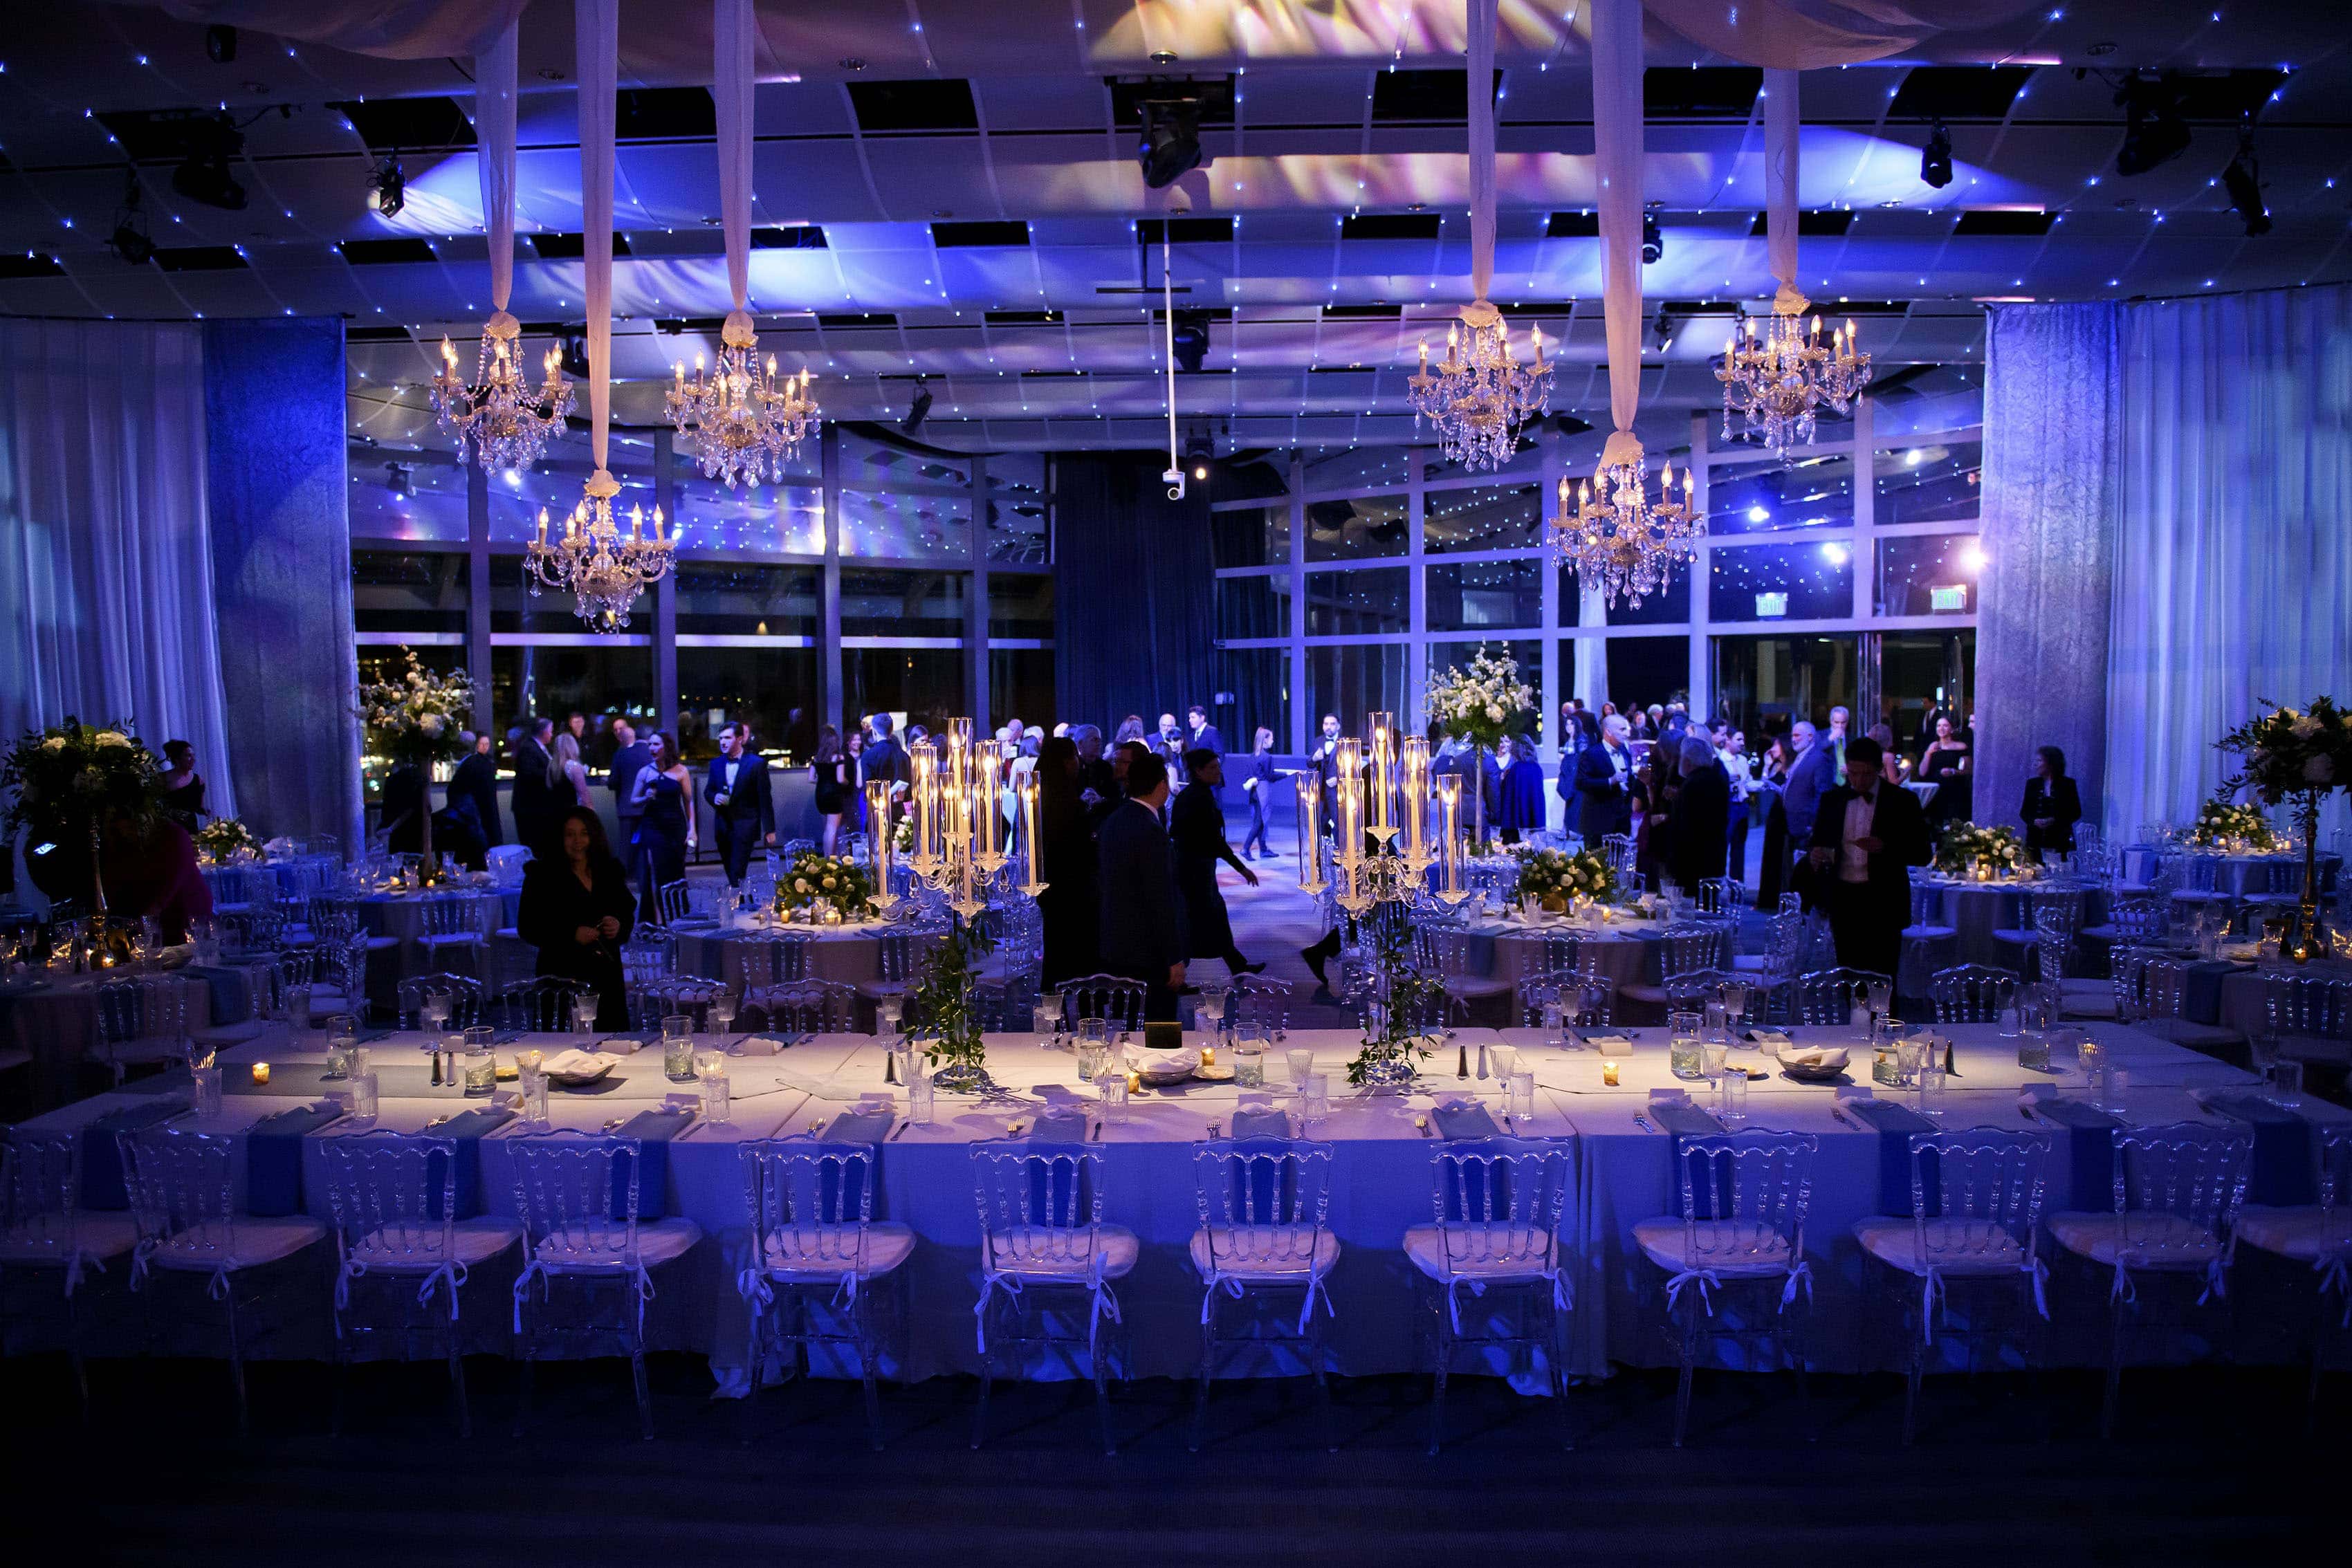 Seawell Ballroom setup for a Greek wedding reception